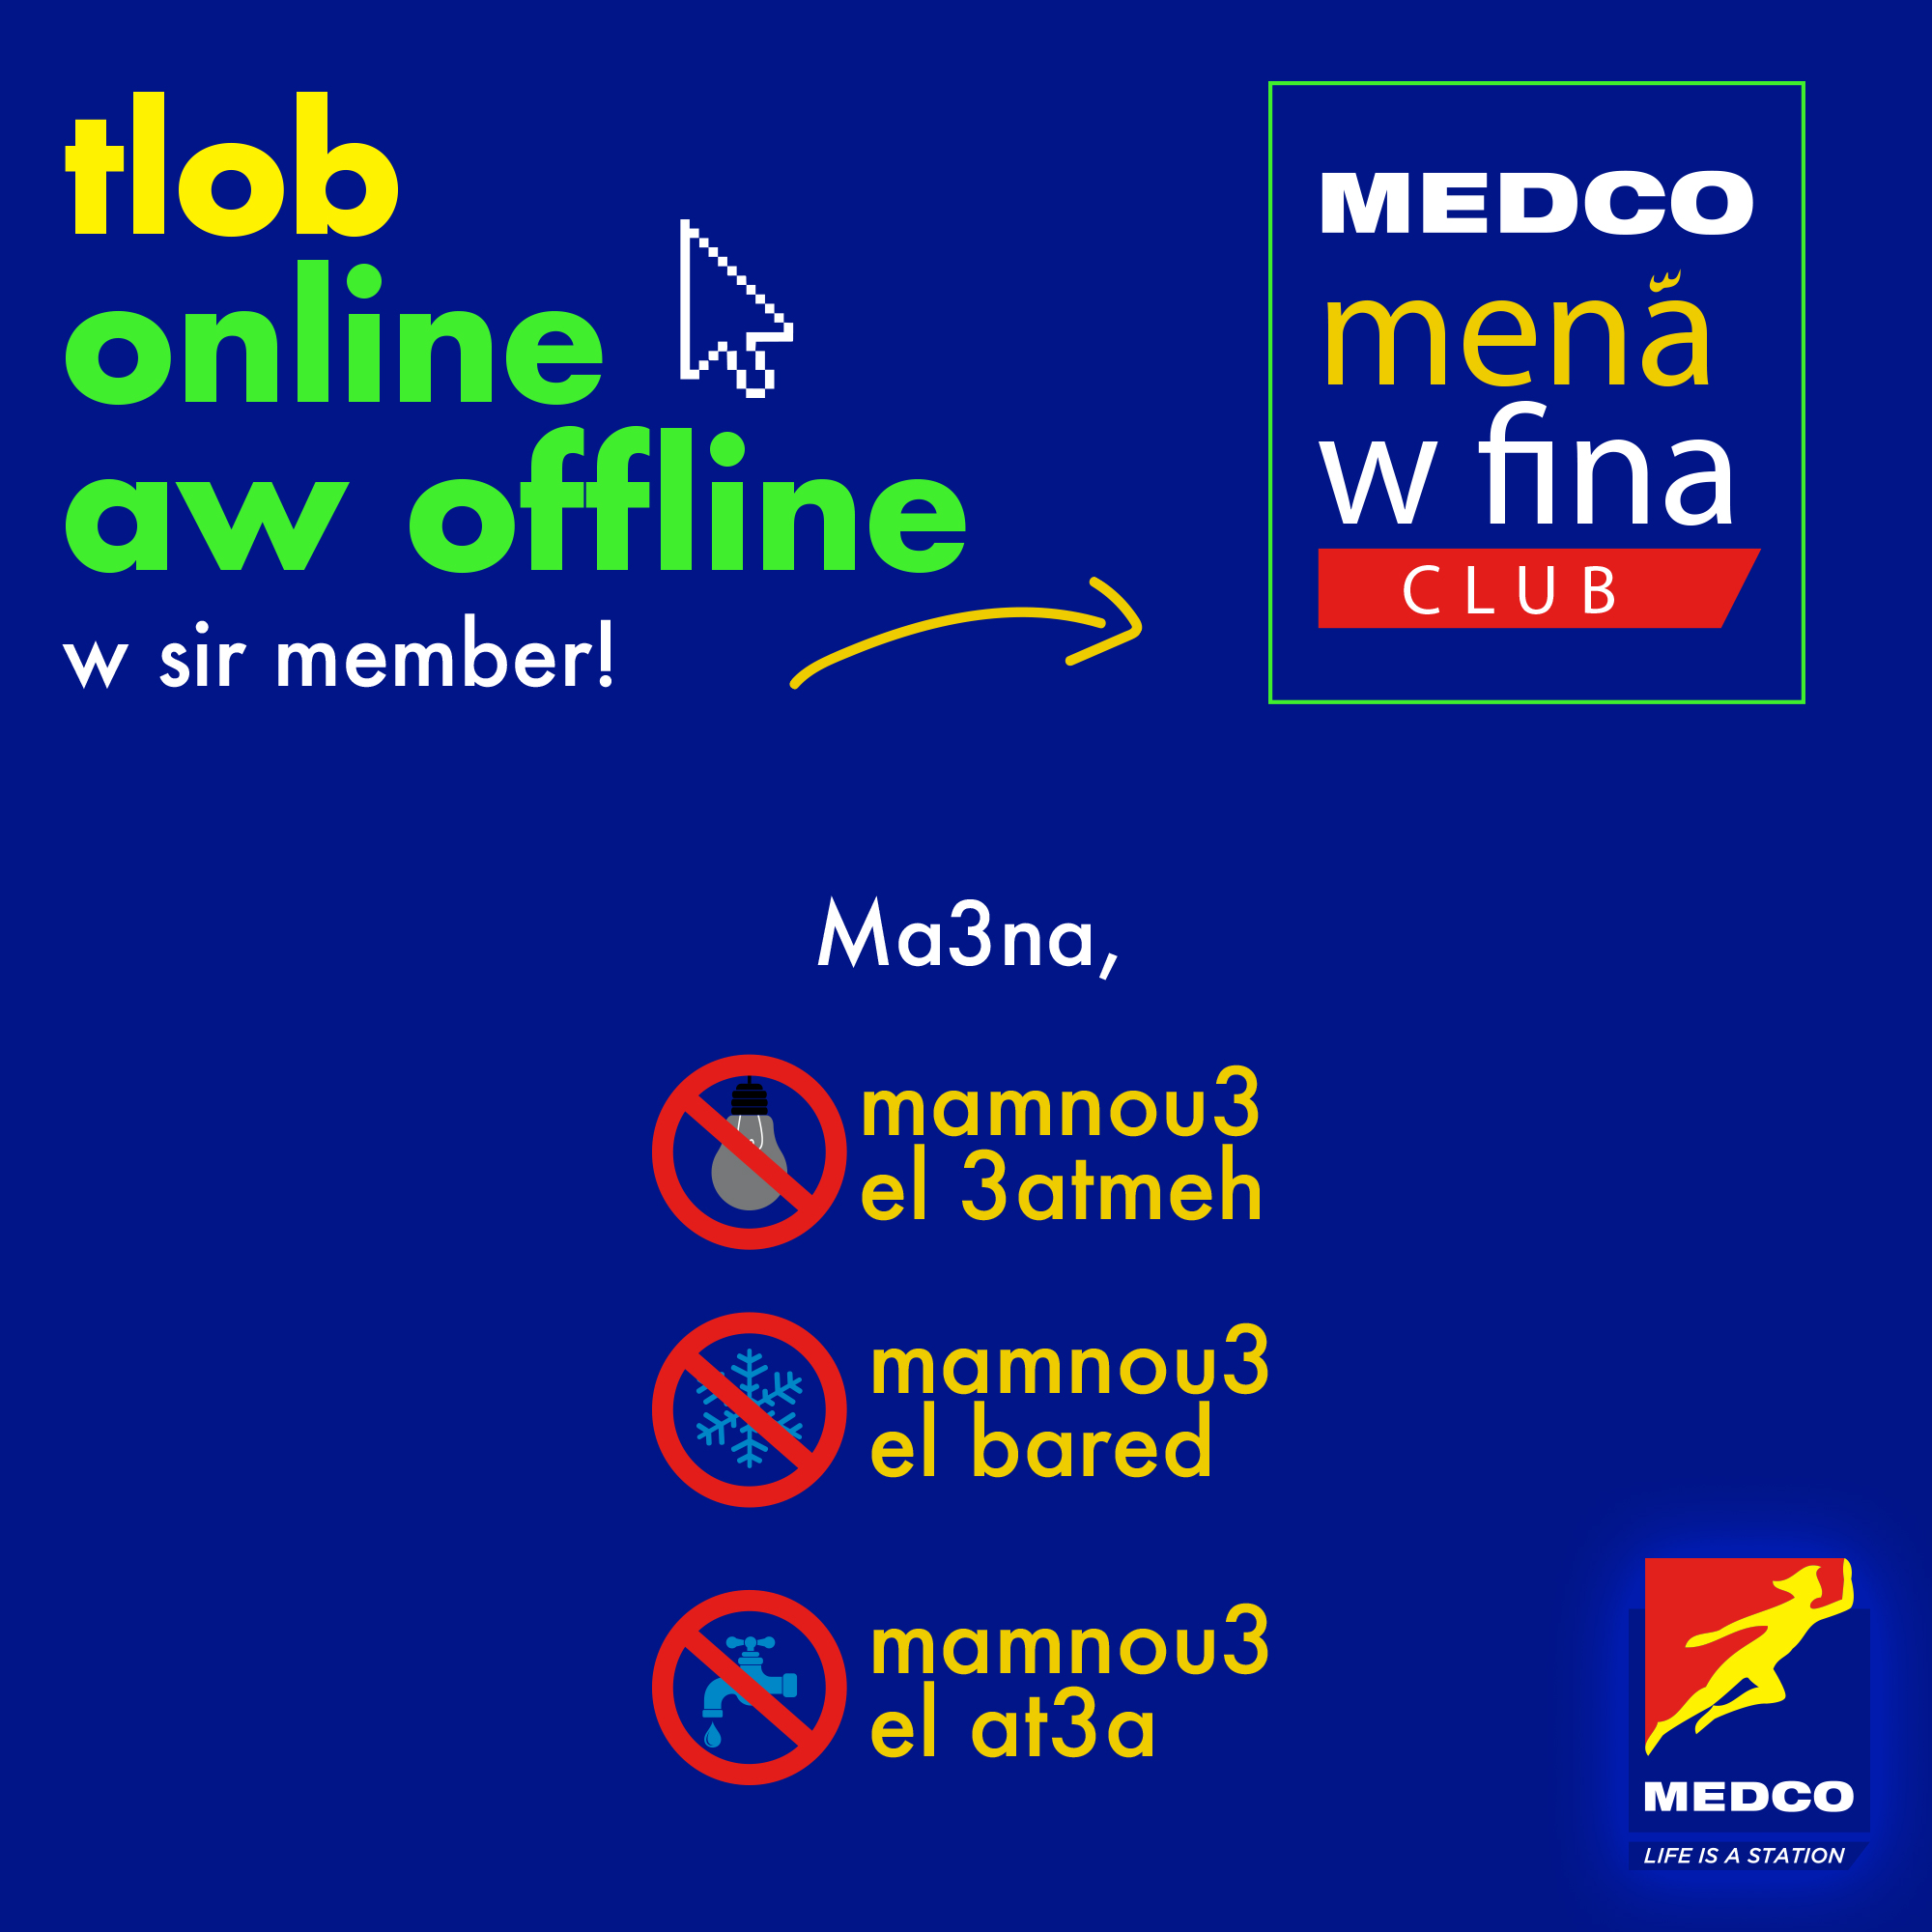 MEDCO Mena w Fina Club